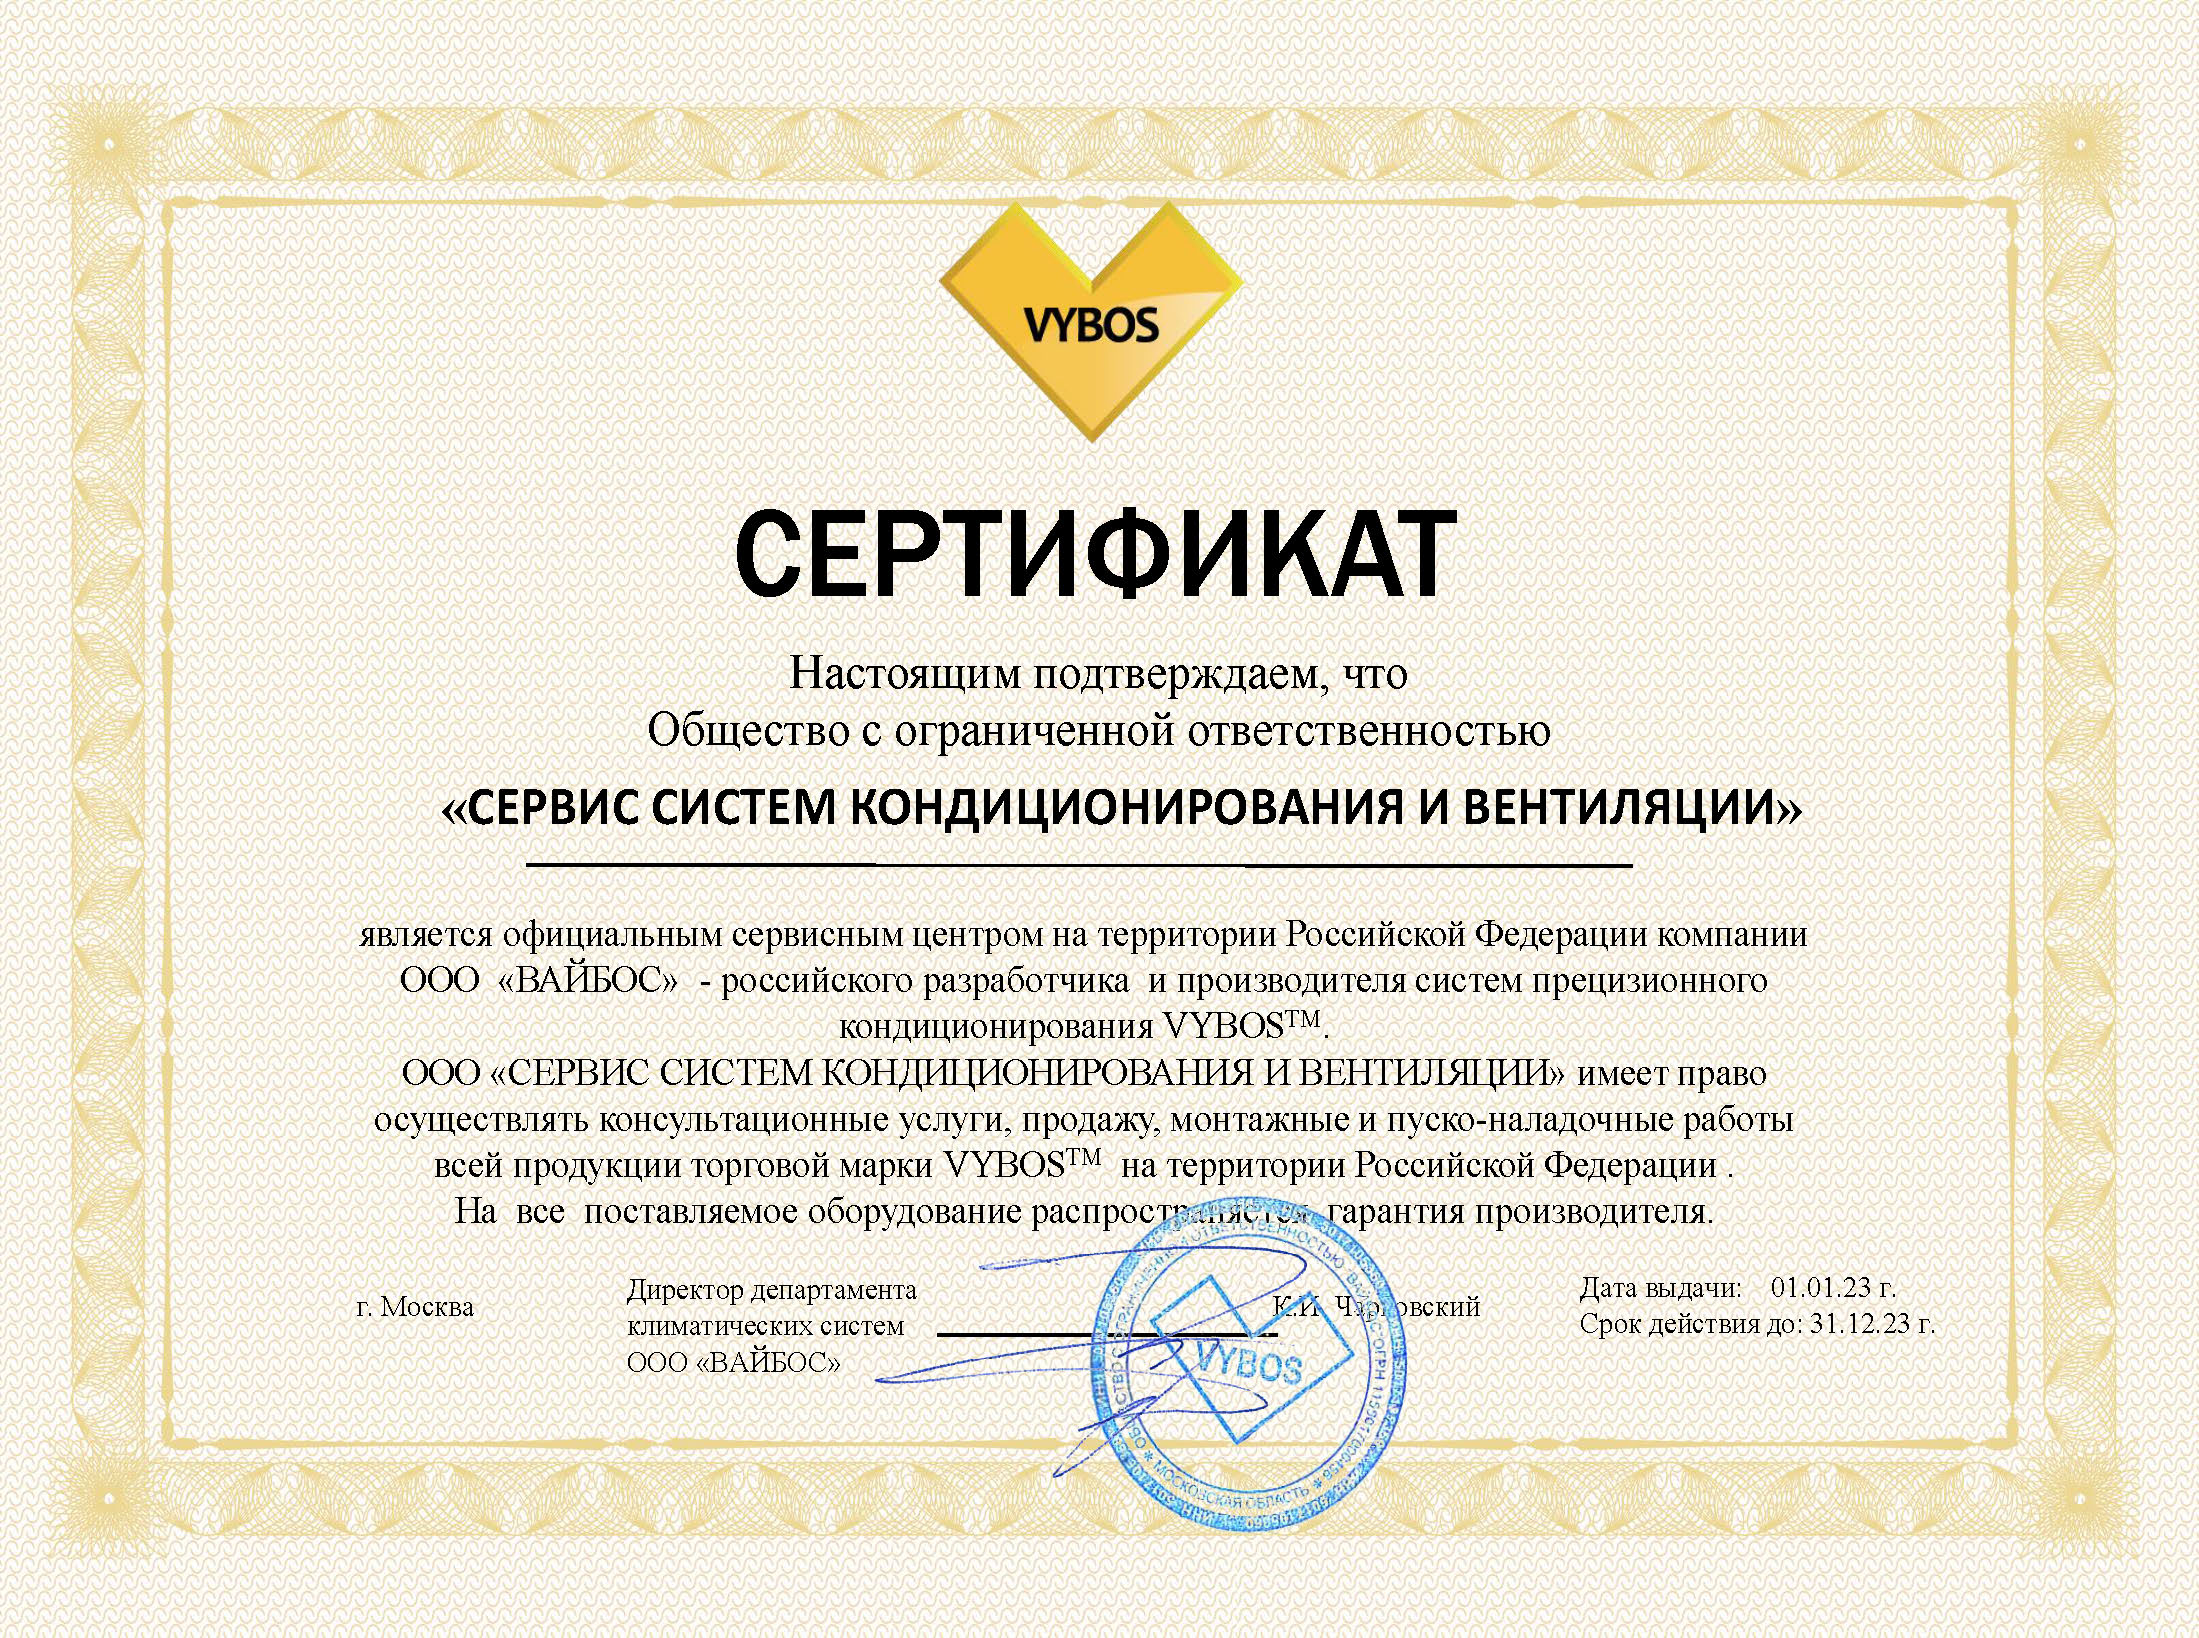 Сертификат официального сервисного центра VYBOS